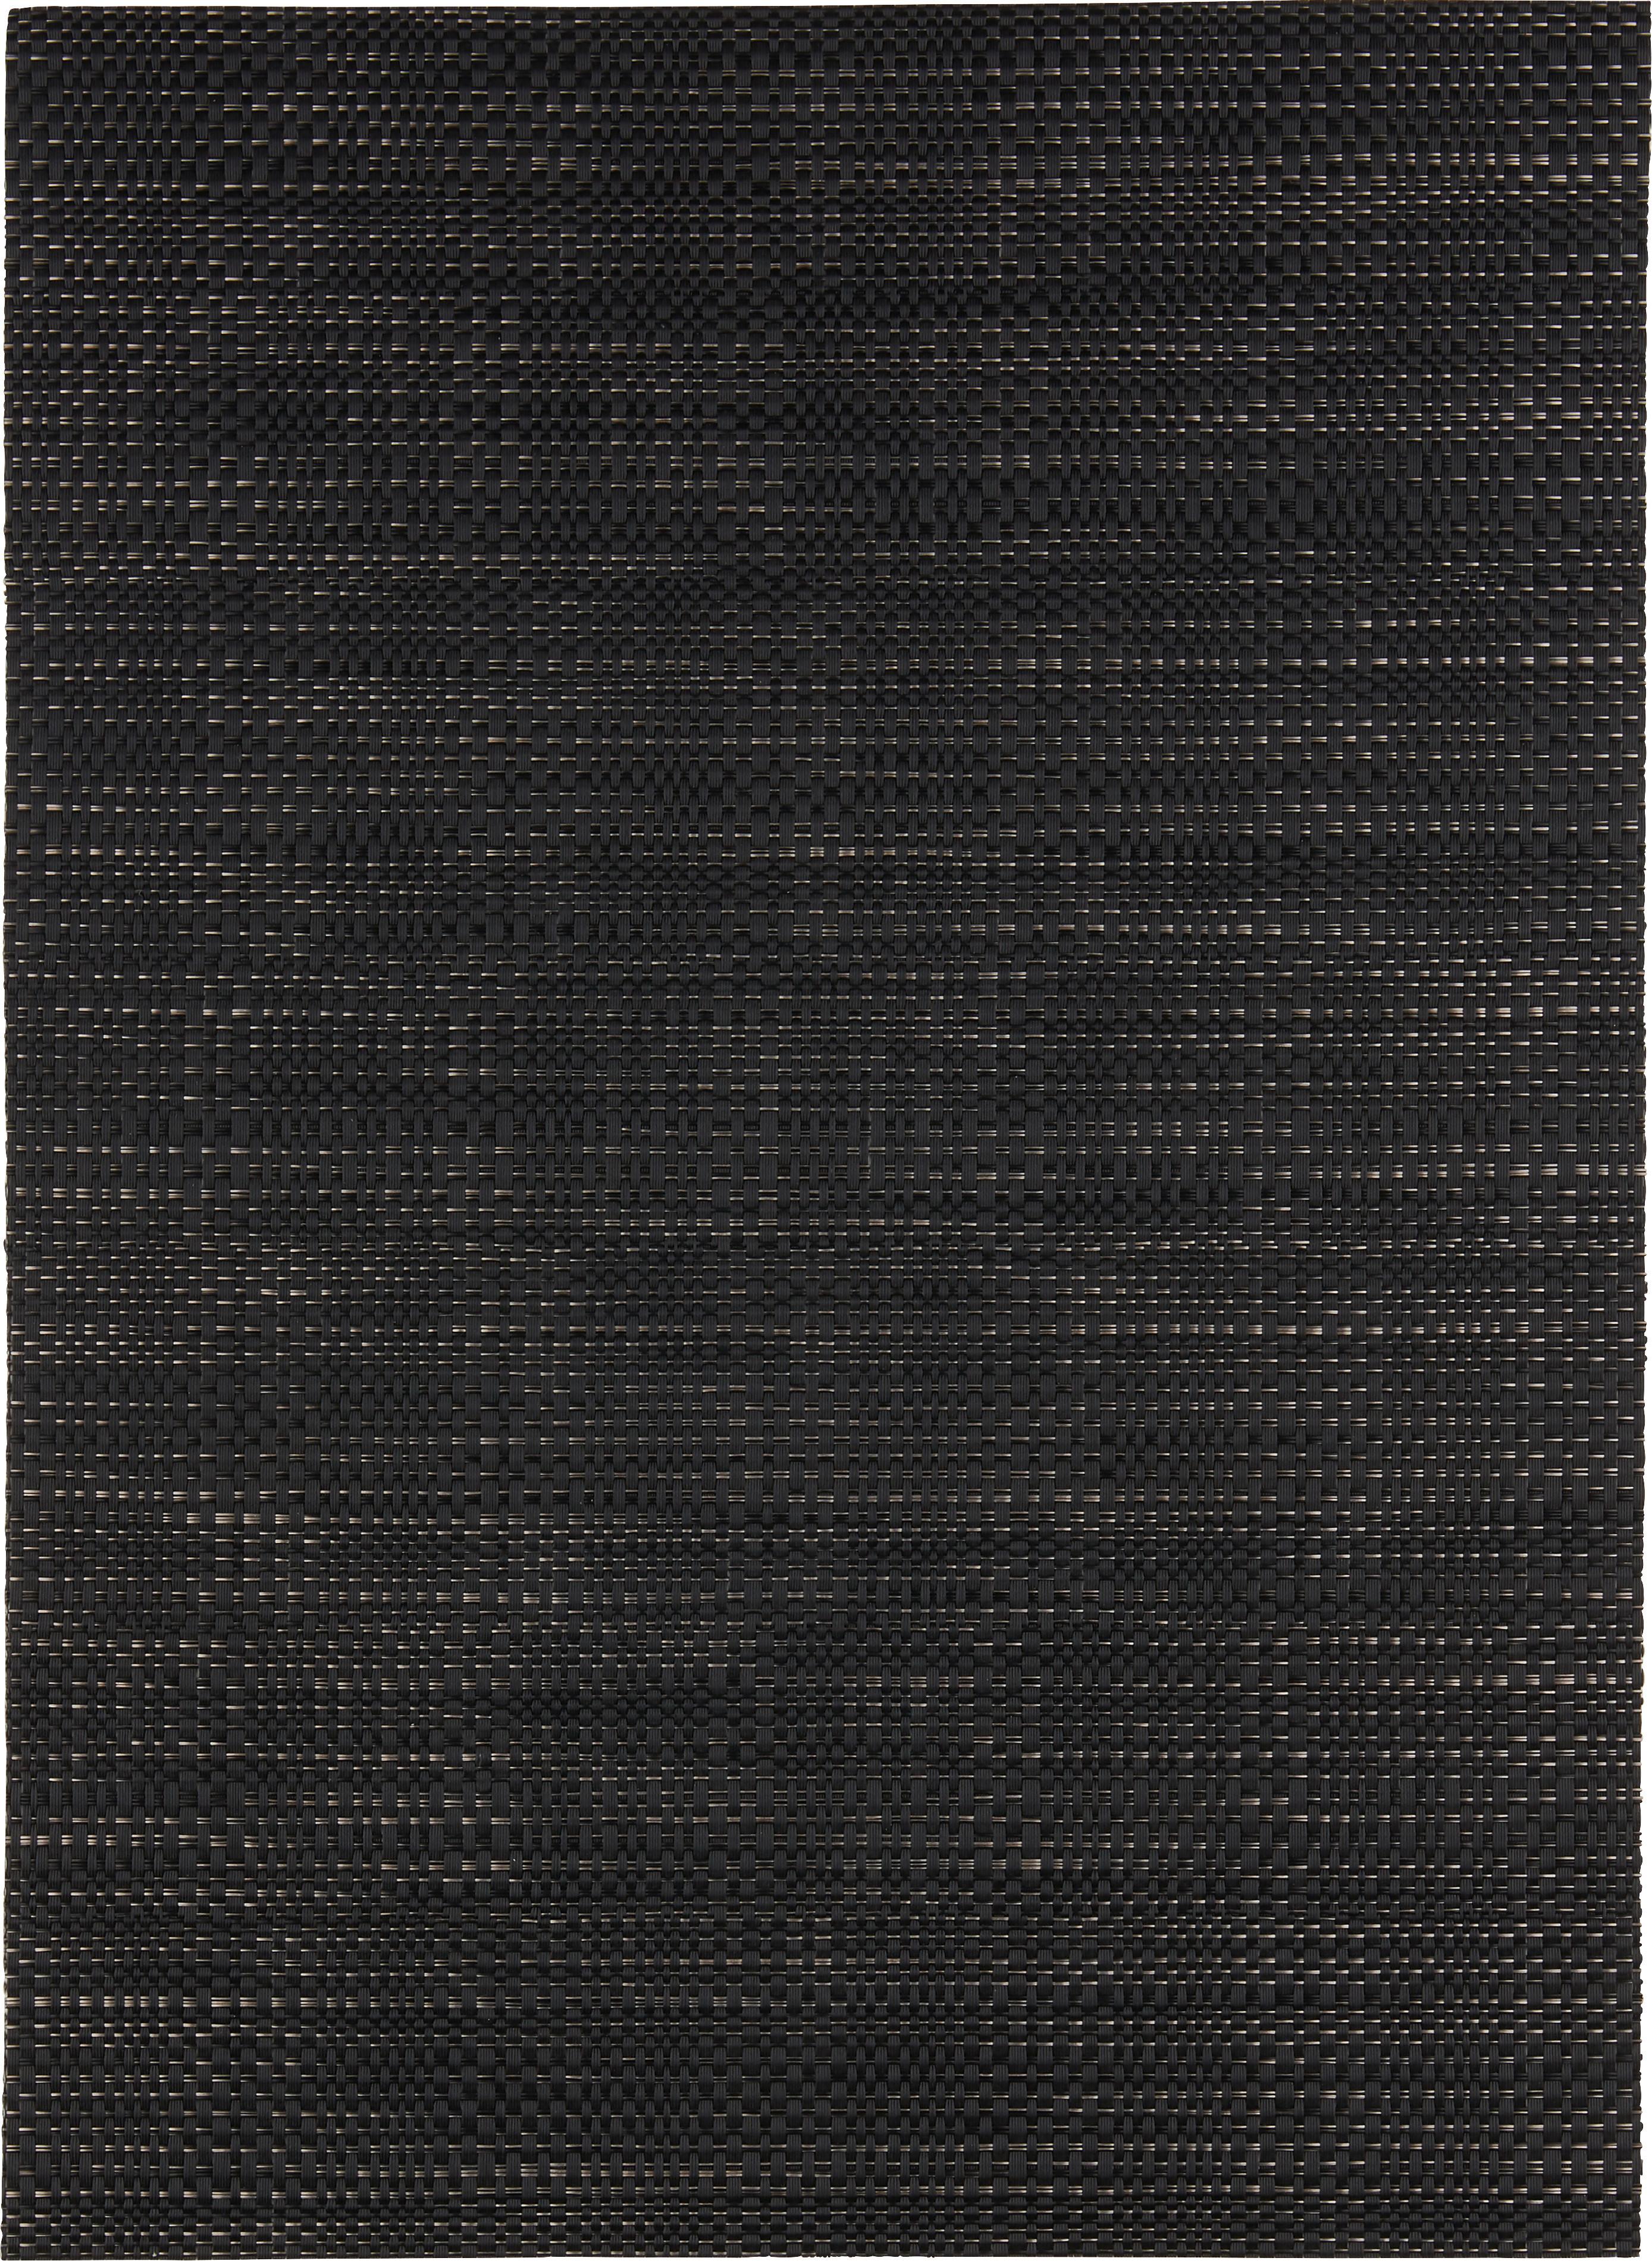 Prestieranie Mary, 33/45cm, Čierna - čierna, textil (33/45cm) - Modern Living